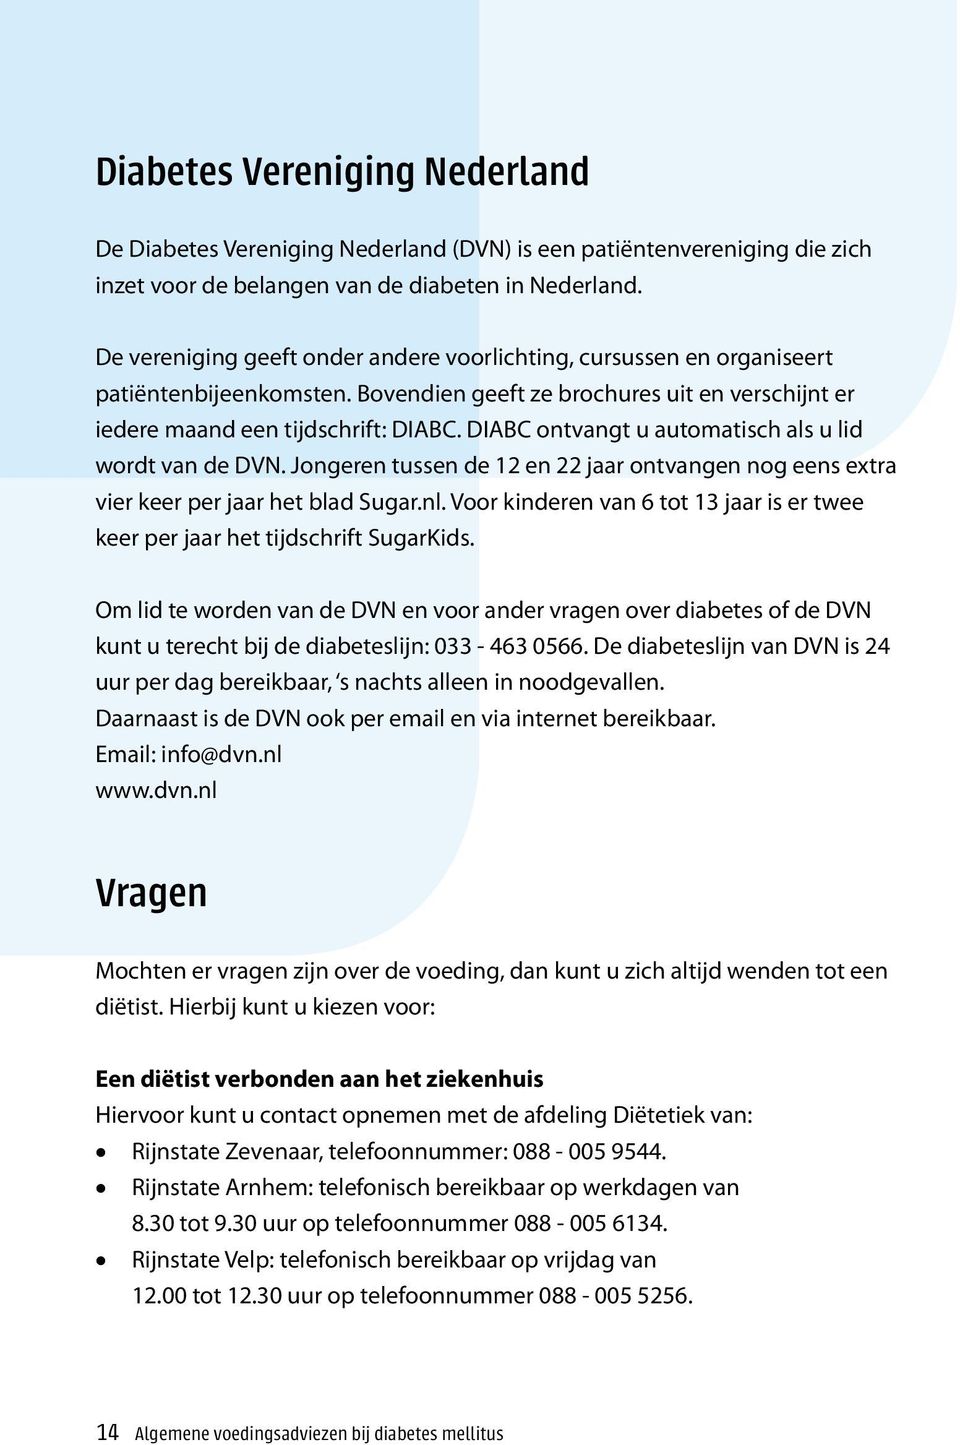 DIABC ontvangt u automatisch als u lid wordt van de DVN. Jongeren tussen de 12 en 22 jaar ontvangen nog eens extra vier keer per jaar het blad Sugar.nl.